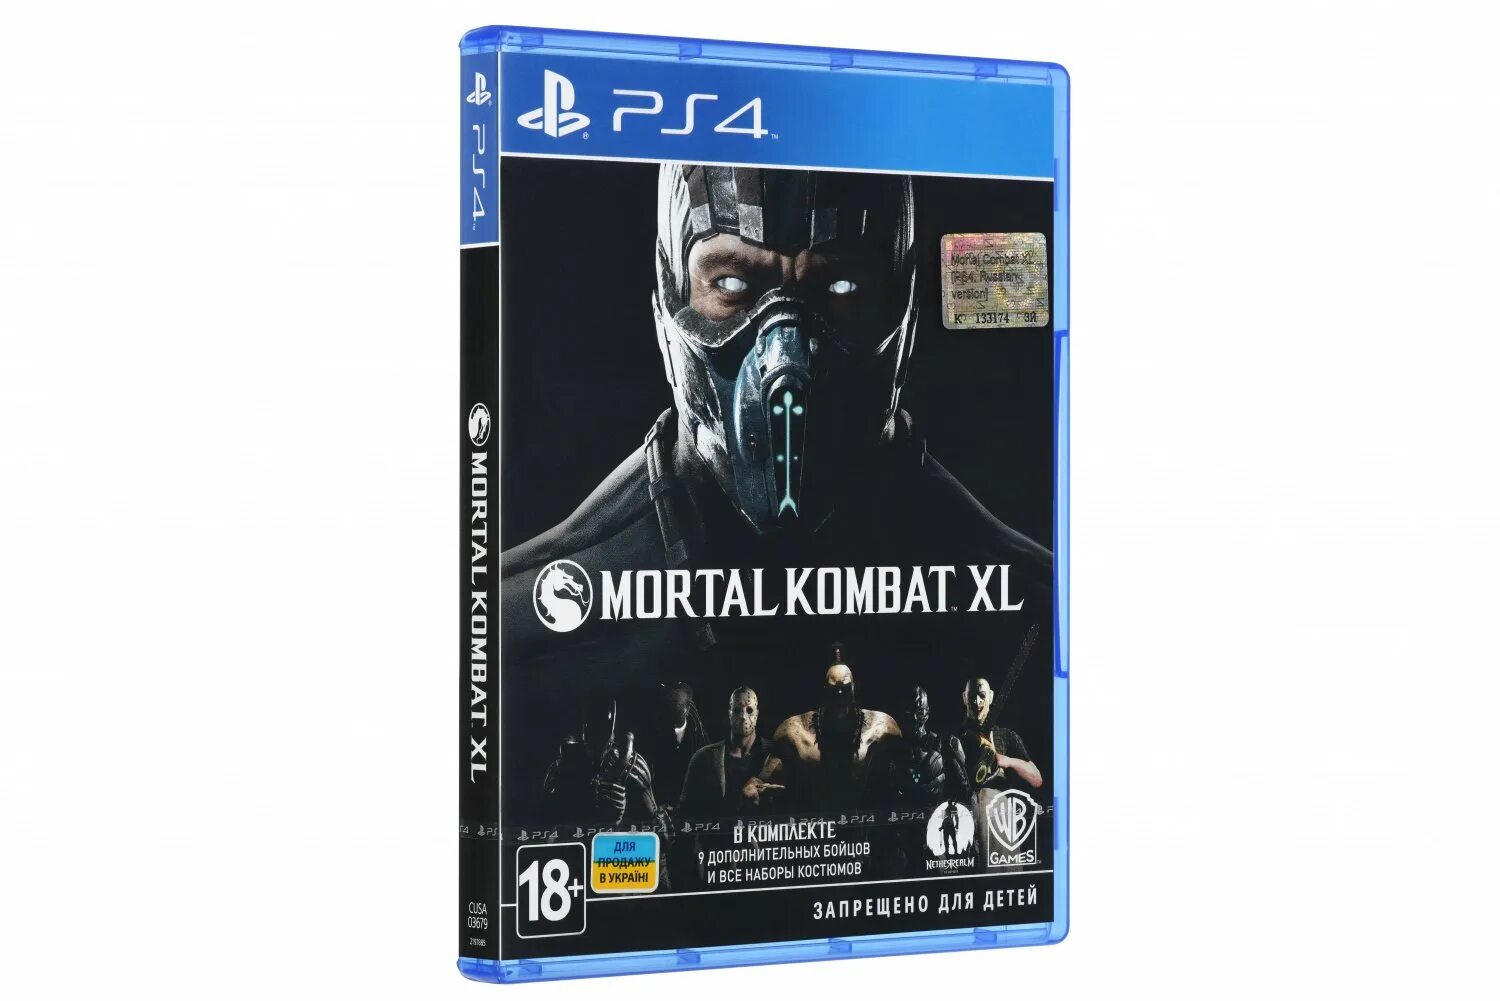 Мортал комбат ps5 купить. Диск мортал комбат XL на пс4. PLAYSTATION 4 Mortal Kombat XL. Mortal Kombat XL ps4 диск. Диск мортал комбат XL на ps4.